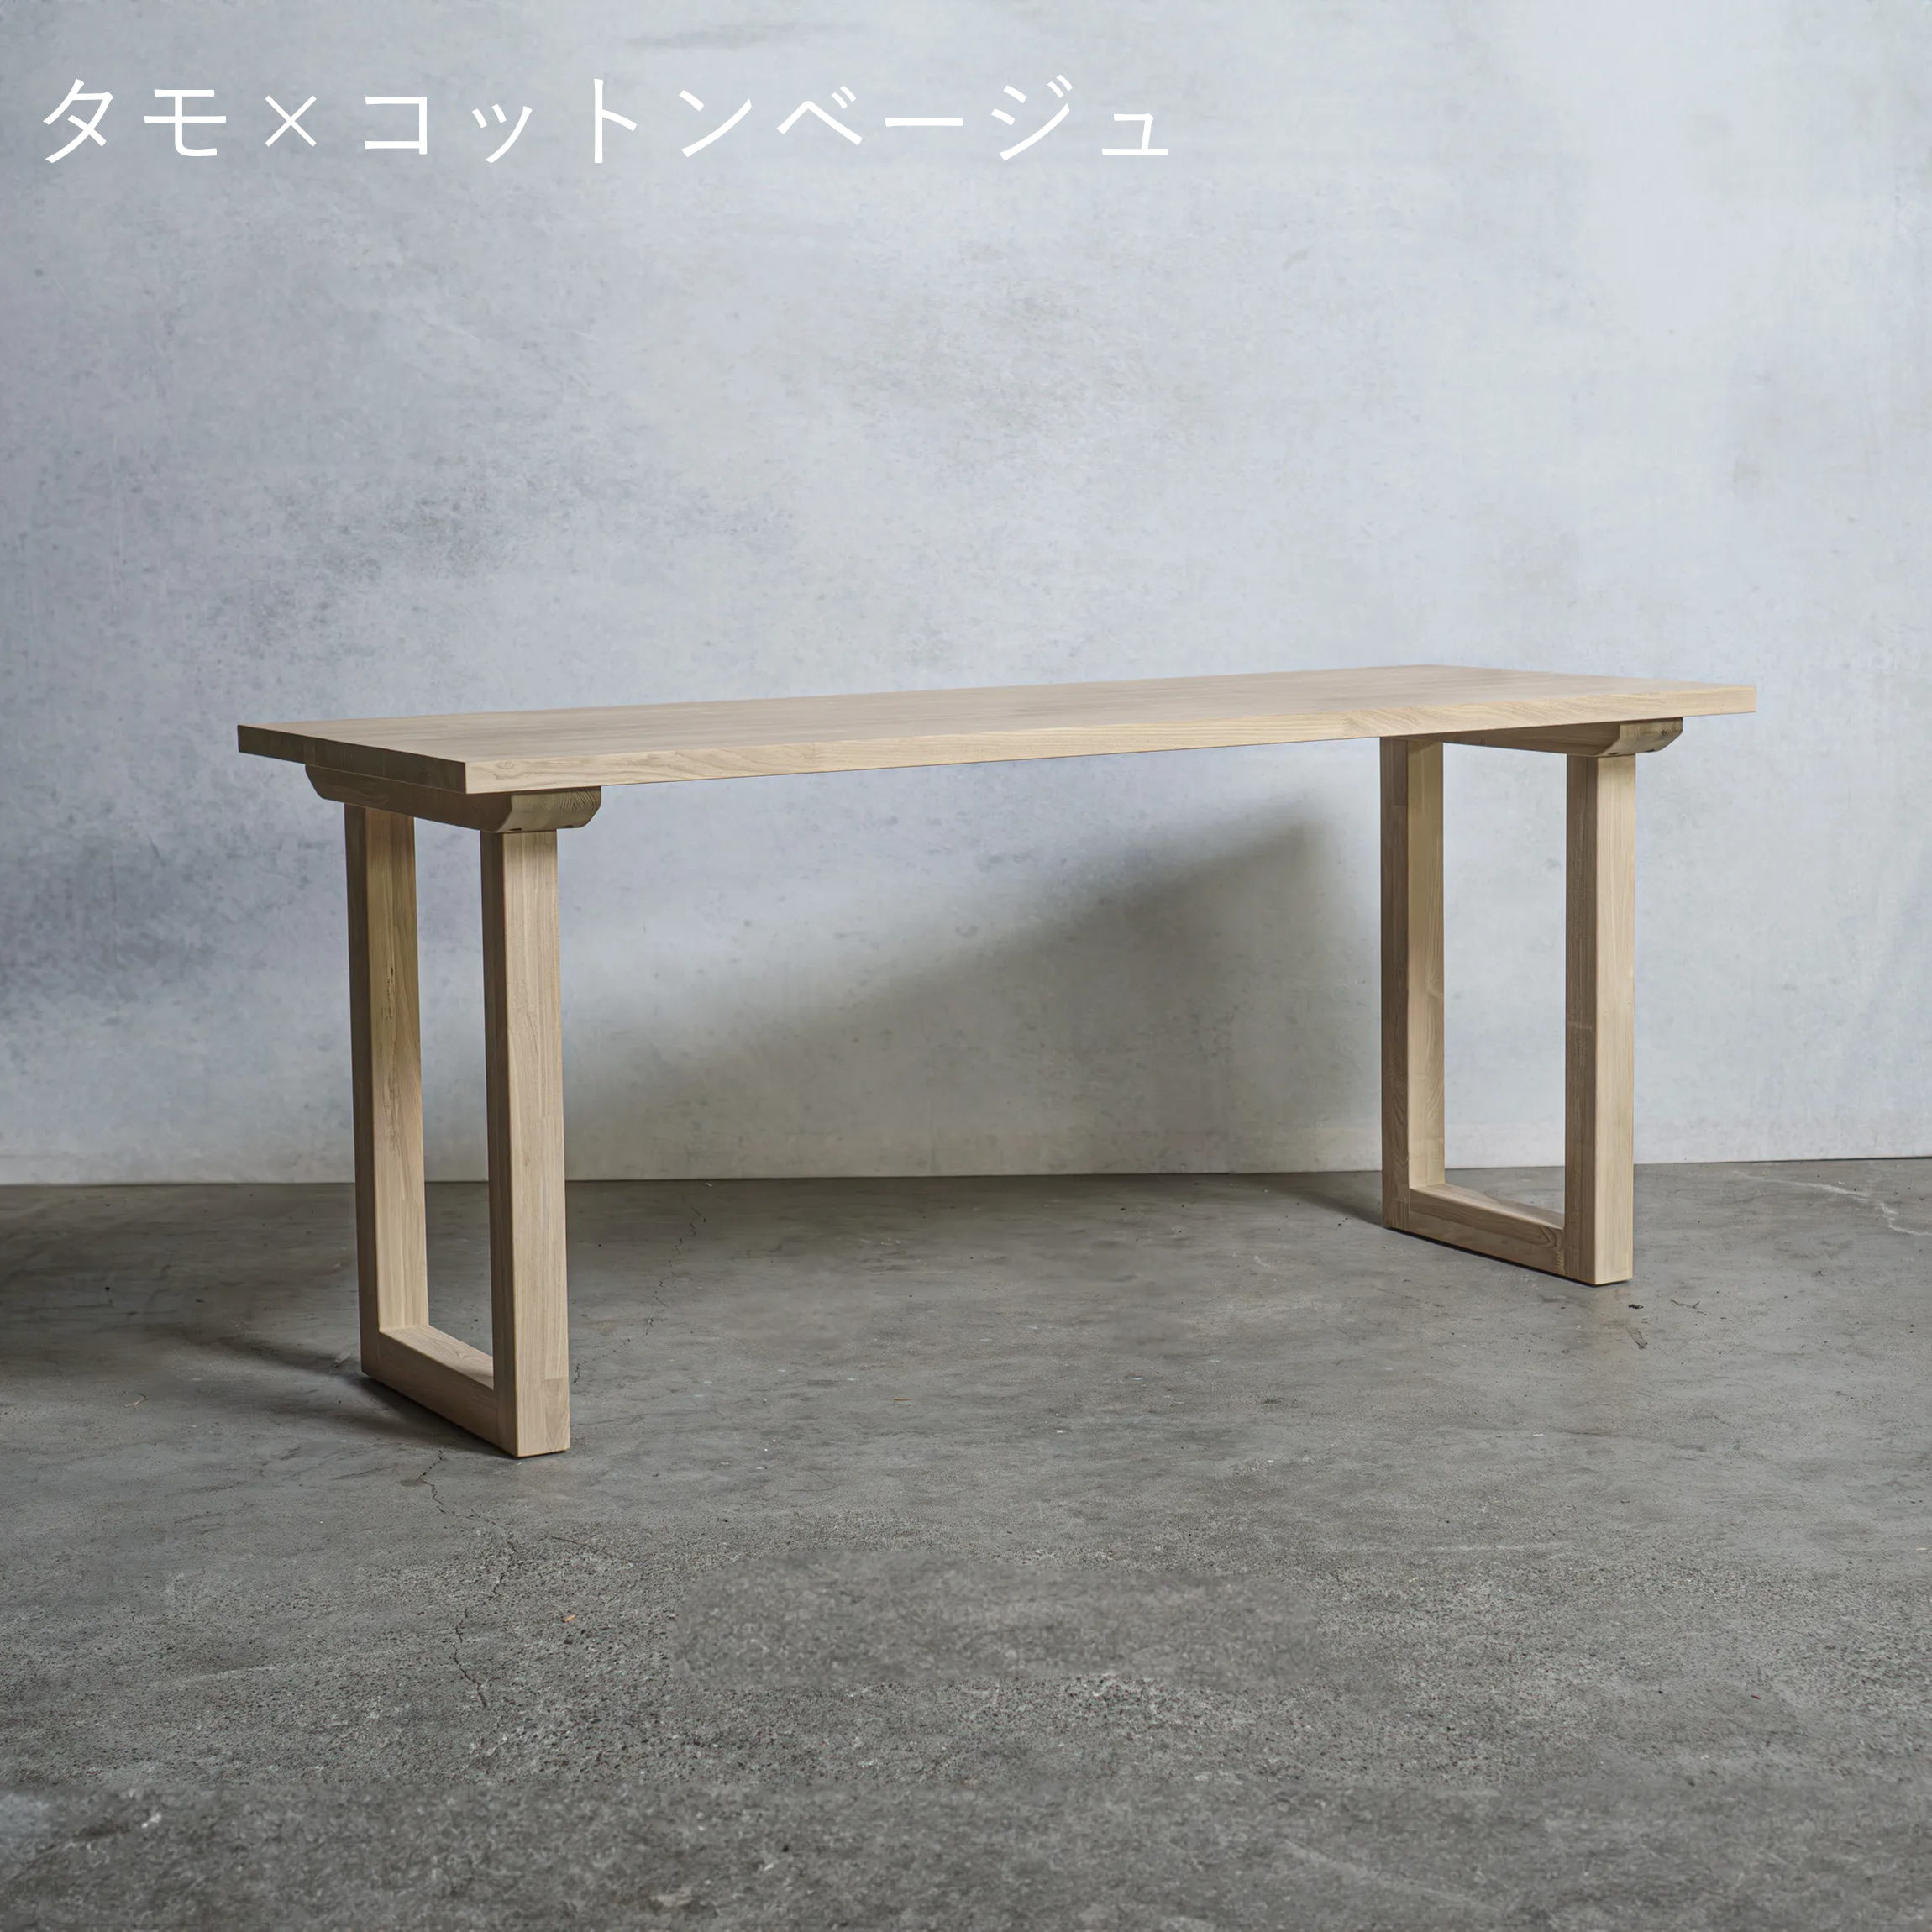 木製 テーブル / デスク  タモ材 口型